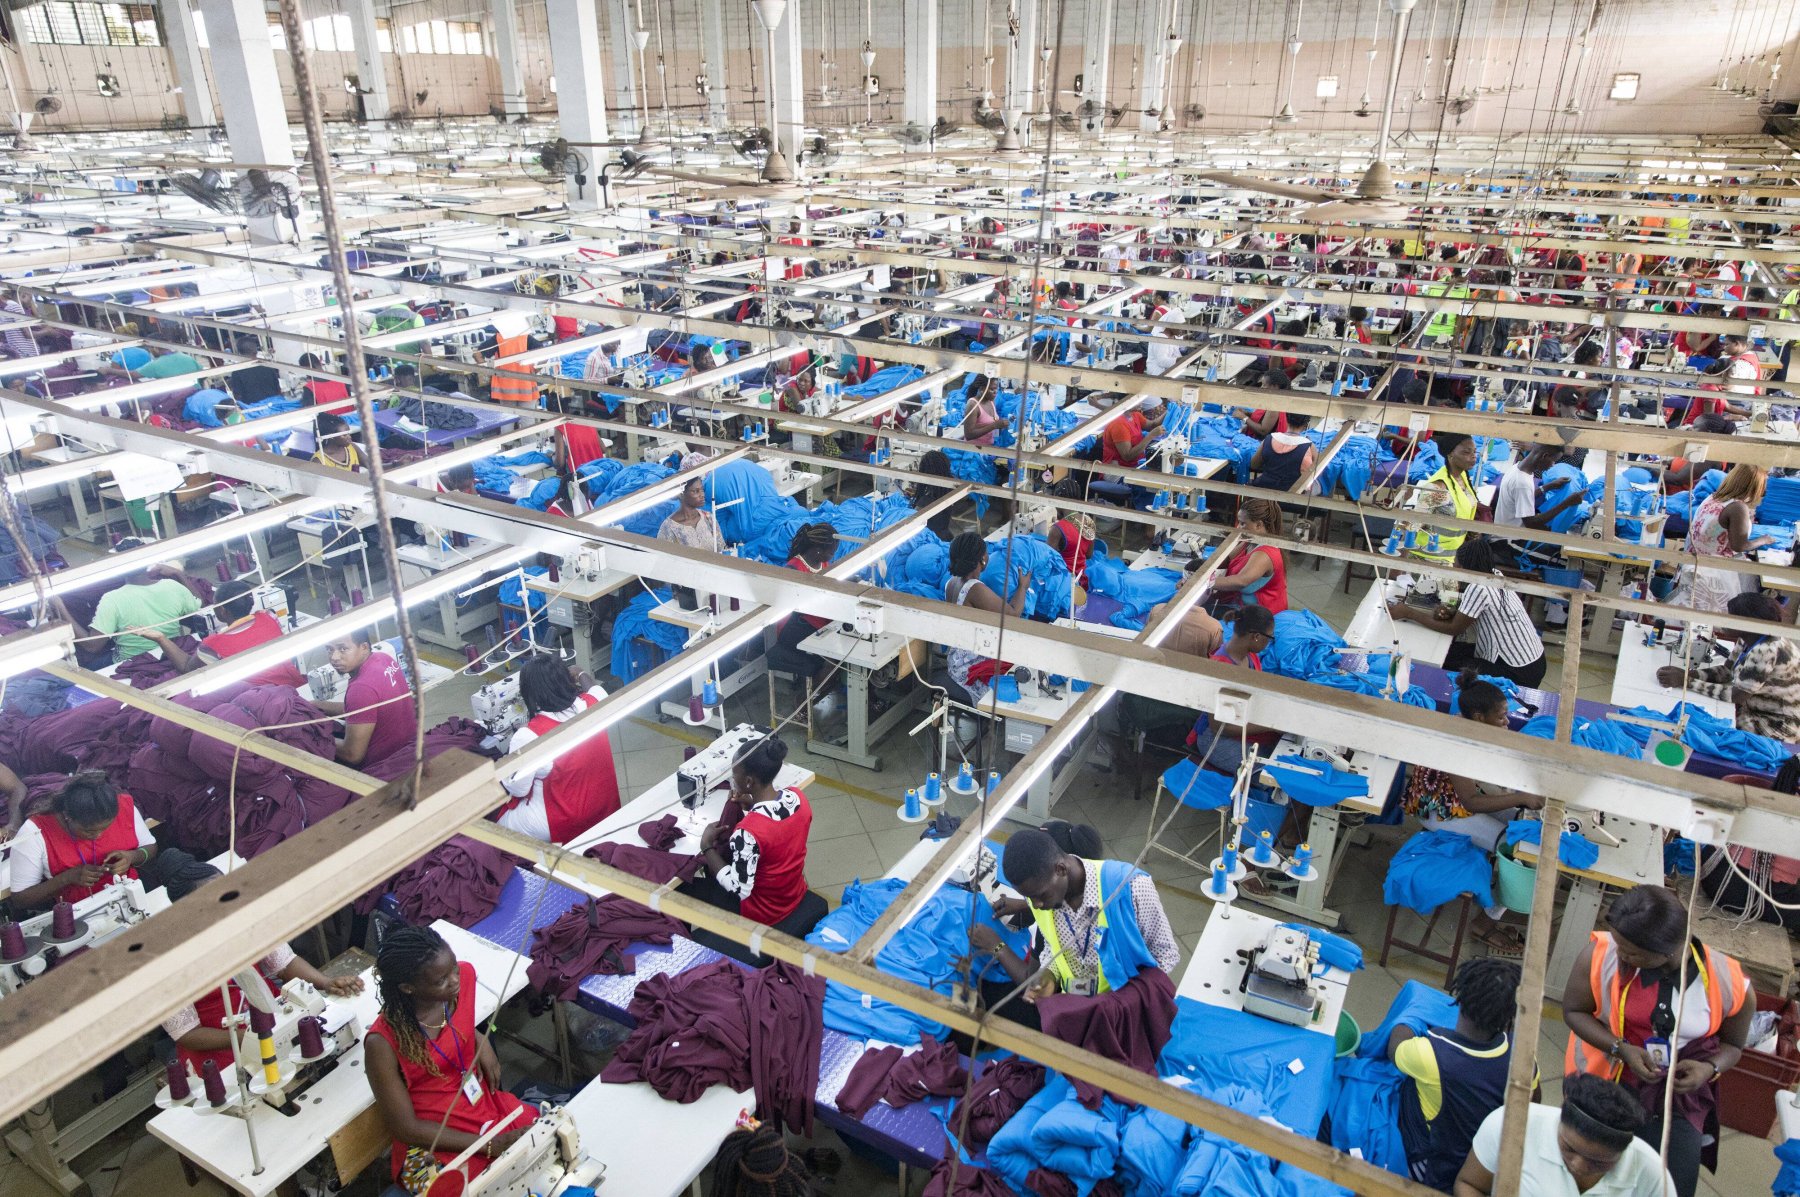 Textilfabrik in Ghana: Die Frage der Lieferketten in den Mittelpunkt der Debatte zu stellen, ist richtig, sagt Bernd Lange. Er will die Globalisierung mit einem europäischen Lieferkettengesetz gerechter machen.